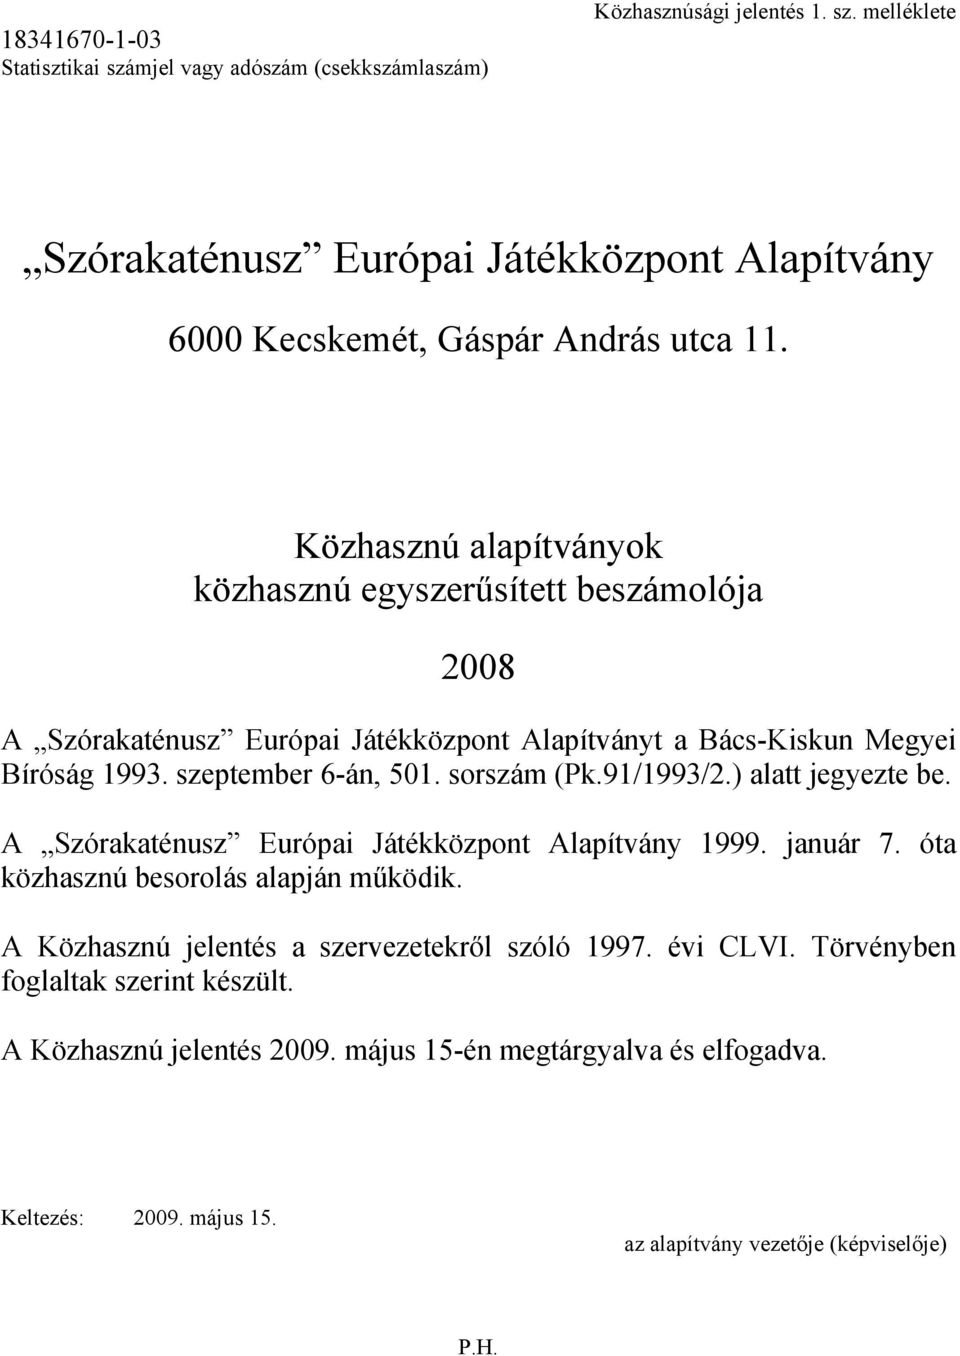 91/1993/2.) alatt jegyezte be. A Szórakaténusz Európai Játékközpont Alapítvány 1999. január 7. óta közhasznú besorolás alapján működik. A Közhasznú jelentés a szervezetekről szóló 1997.